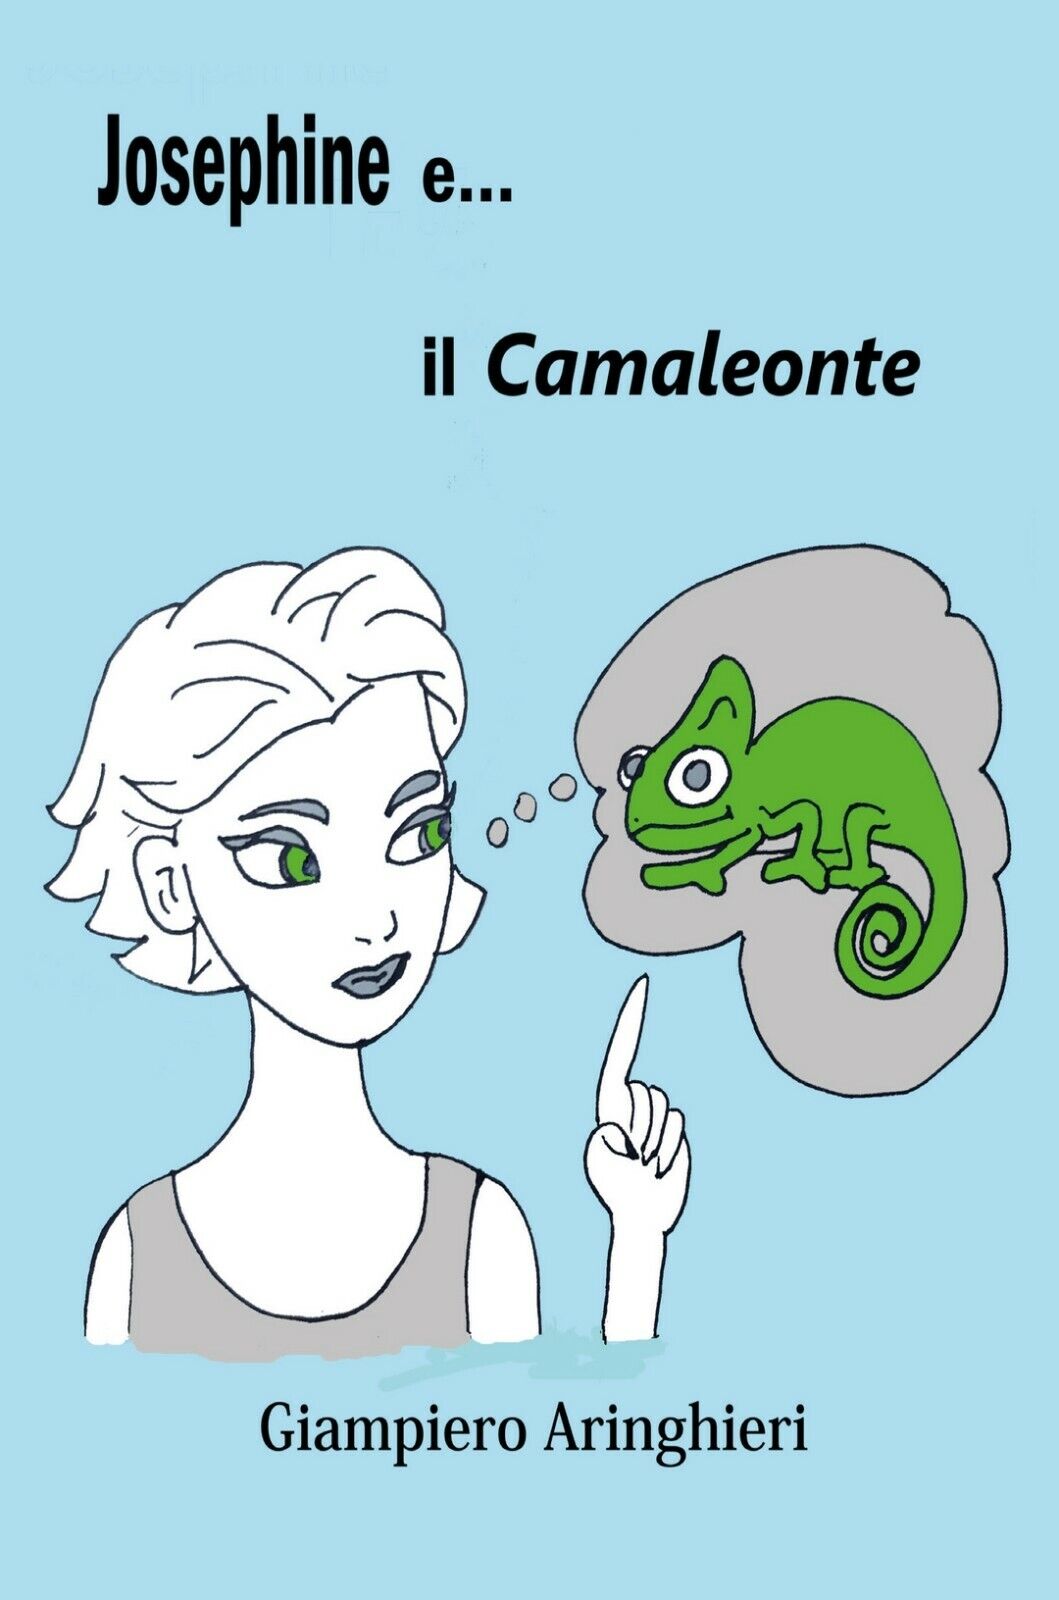 Josephine e... il camaleonte  di Giampiero Aringhieri,  2020,  Youcanprint